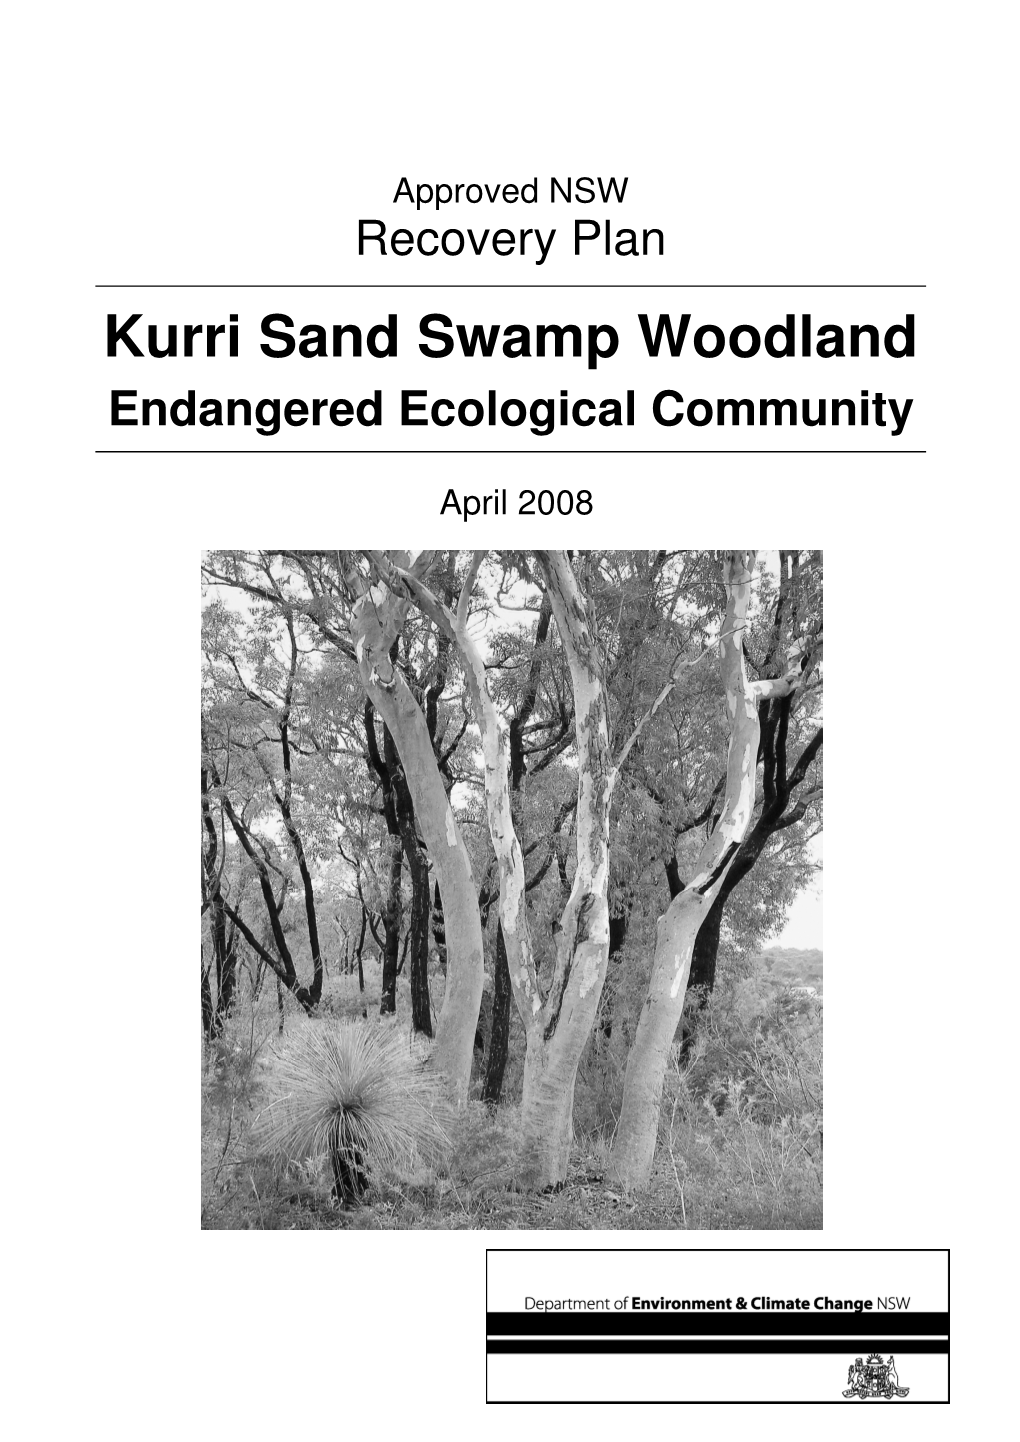 Kurri Sand Swamp Woodland Endangered Ecological Community